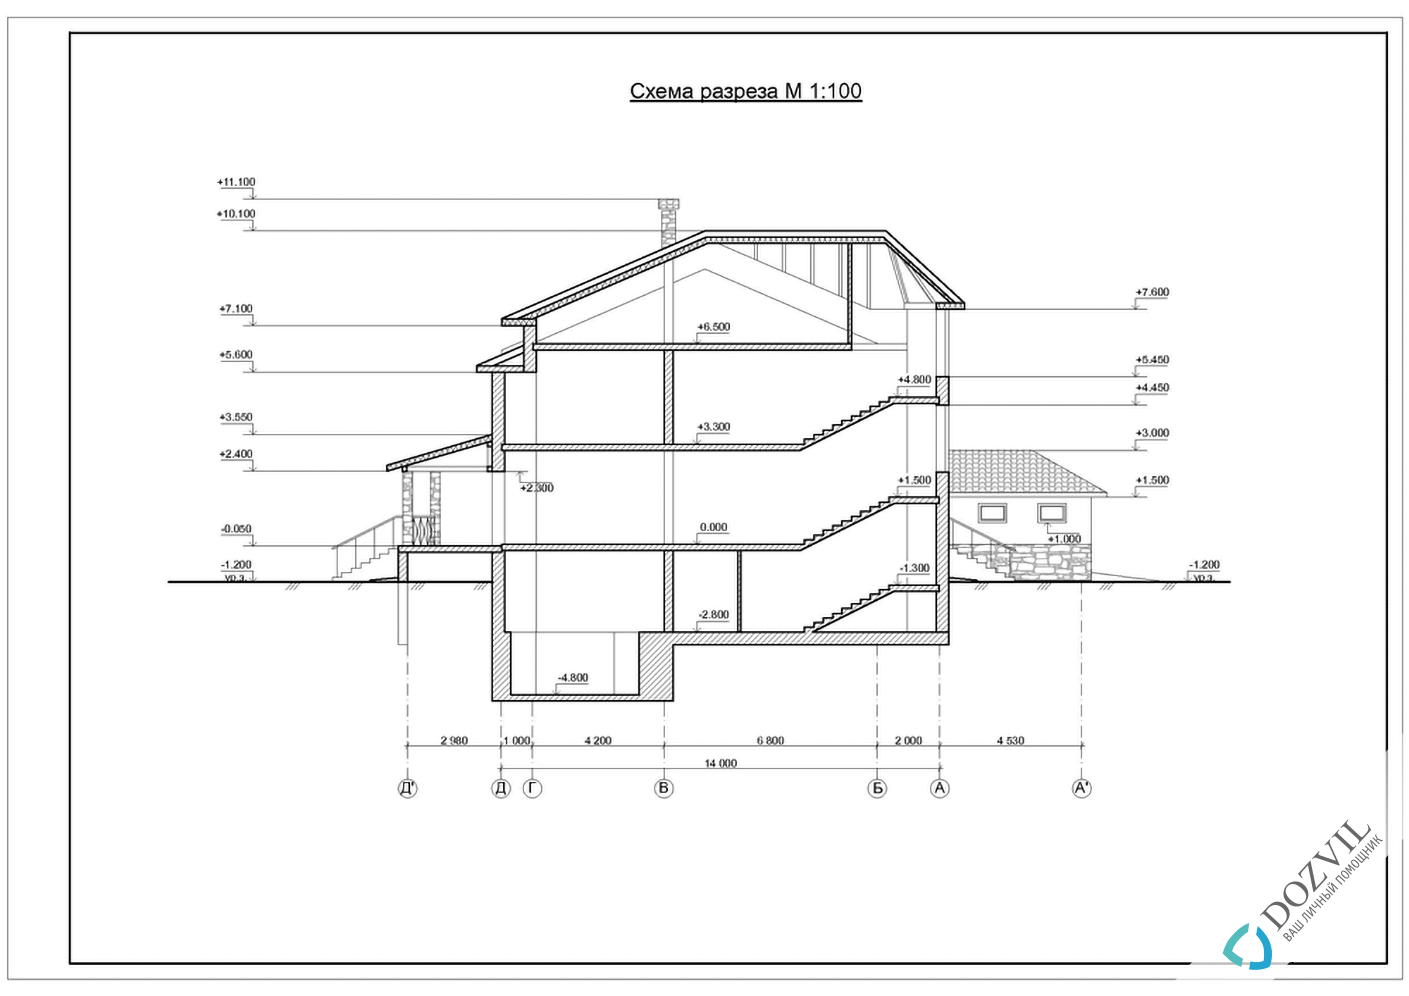 Оформлення гаража > Гараж на ділянці поруч з житловим або садовим будинком > 2 етап - Розробка ескізу намірів будівництва